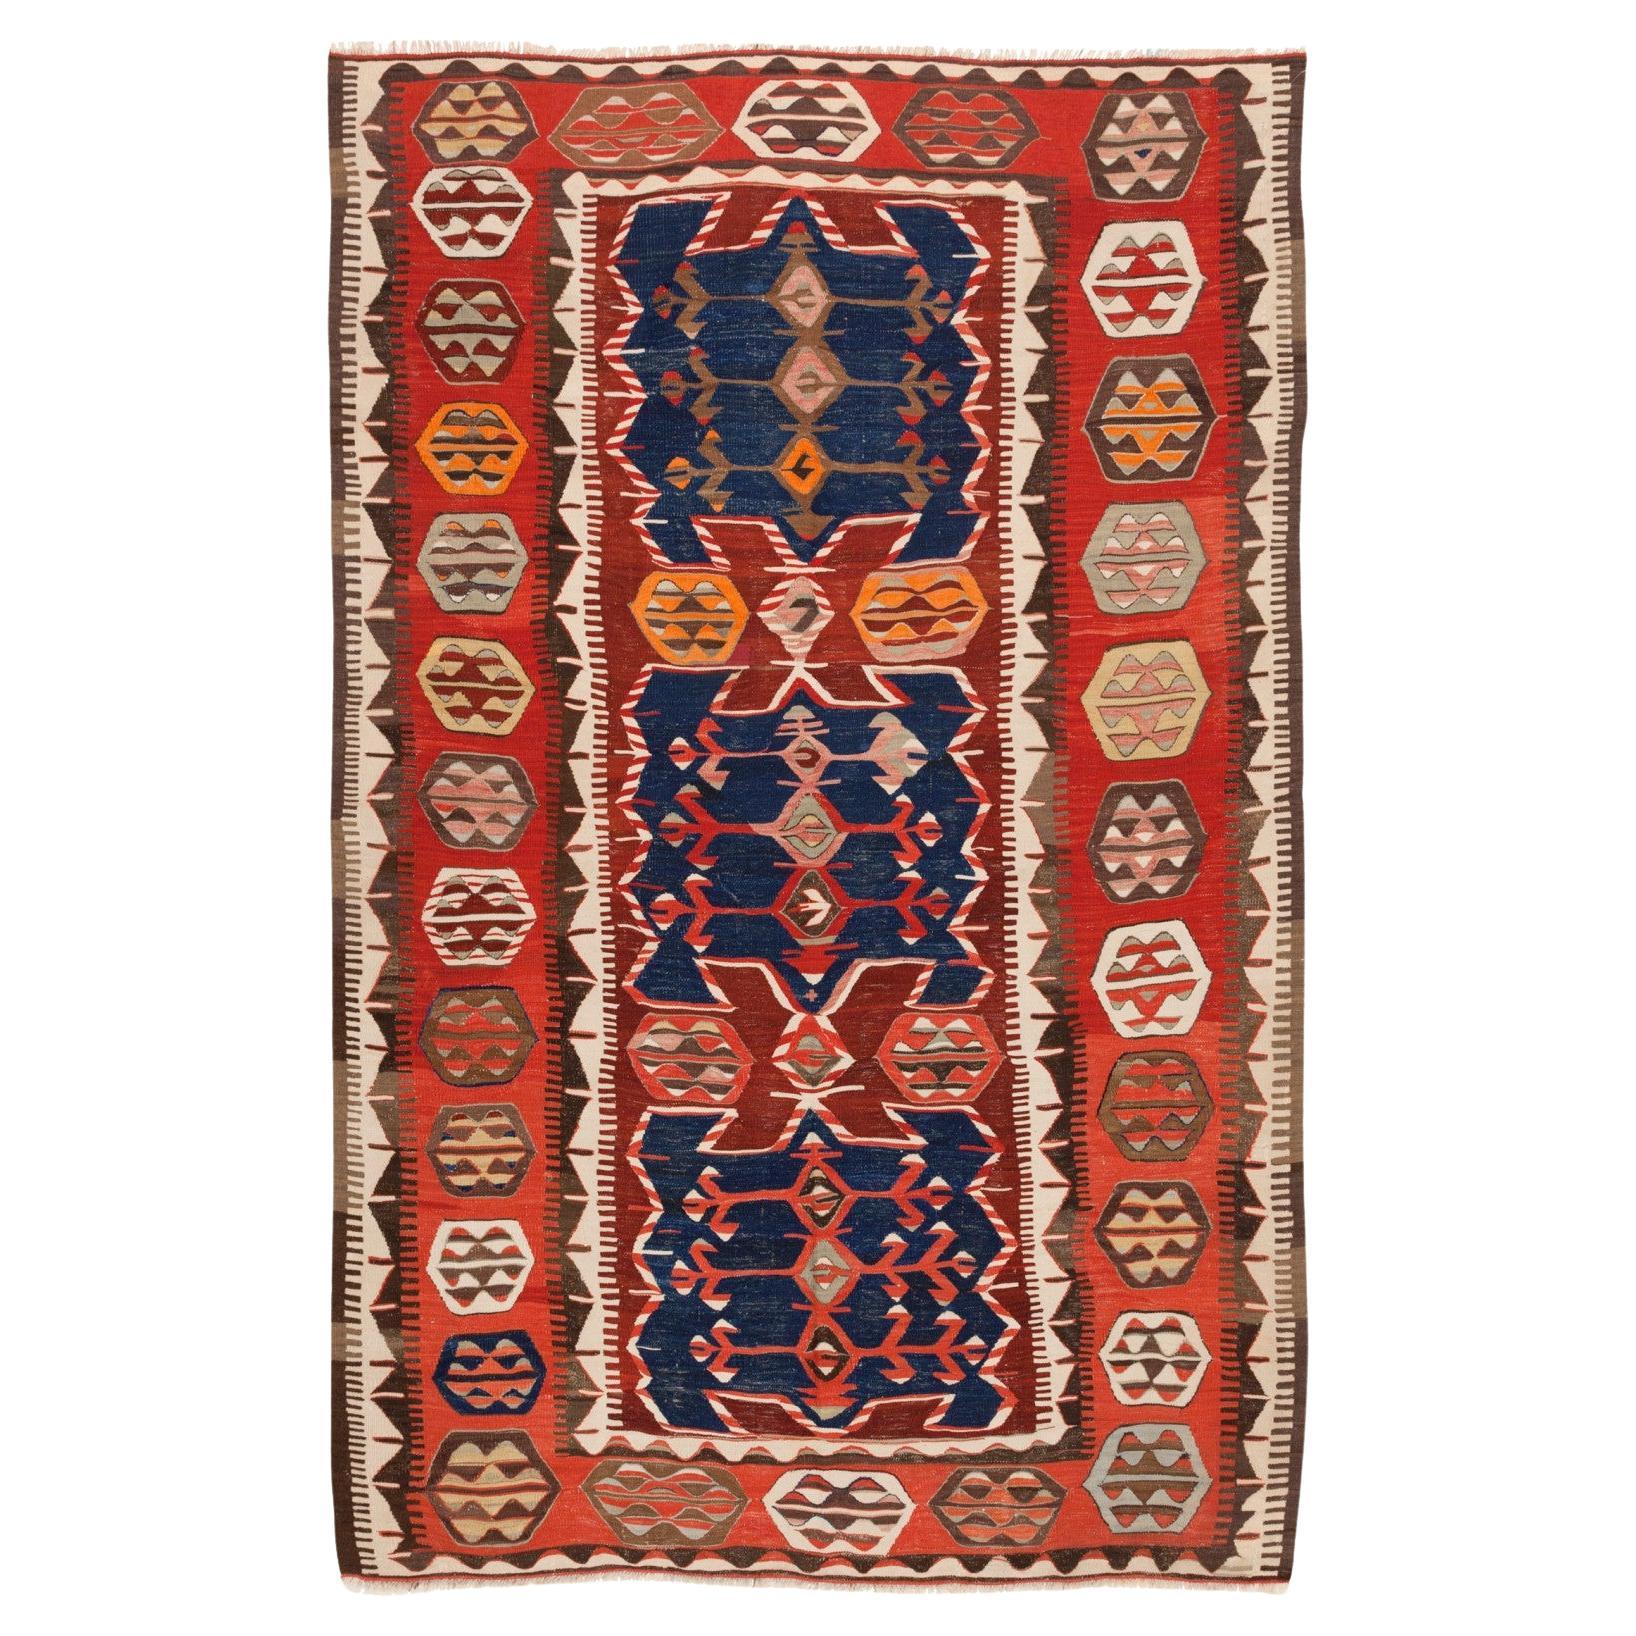 Antique Konya Obruk Kilim Central Anatolian Rug Vintage Turkish Carpet For Sale